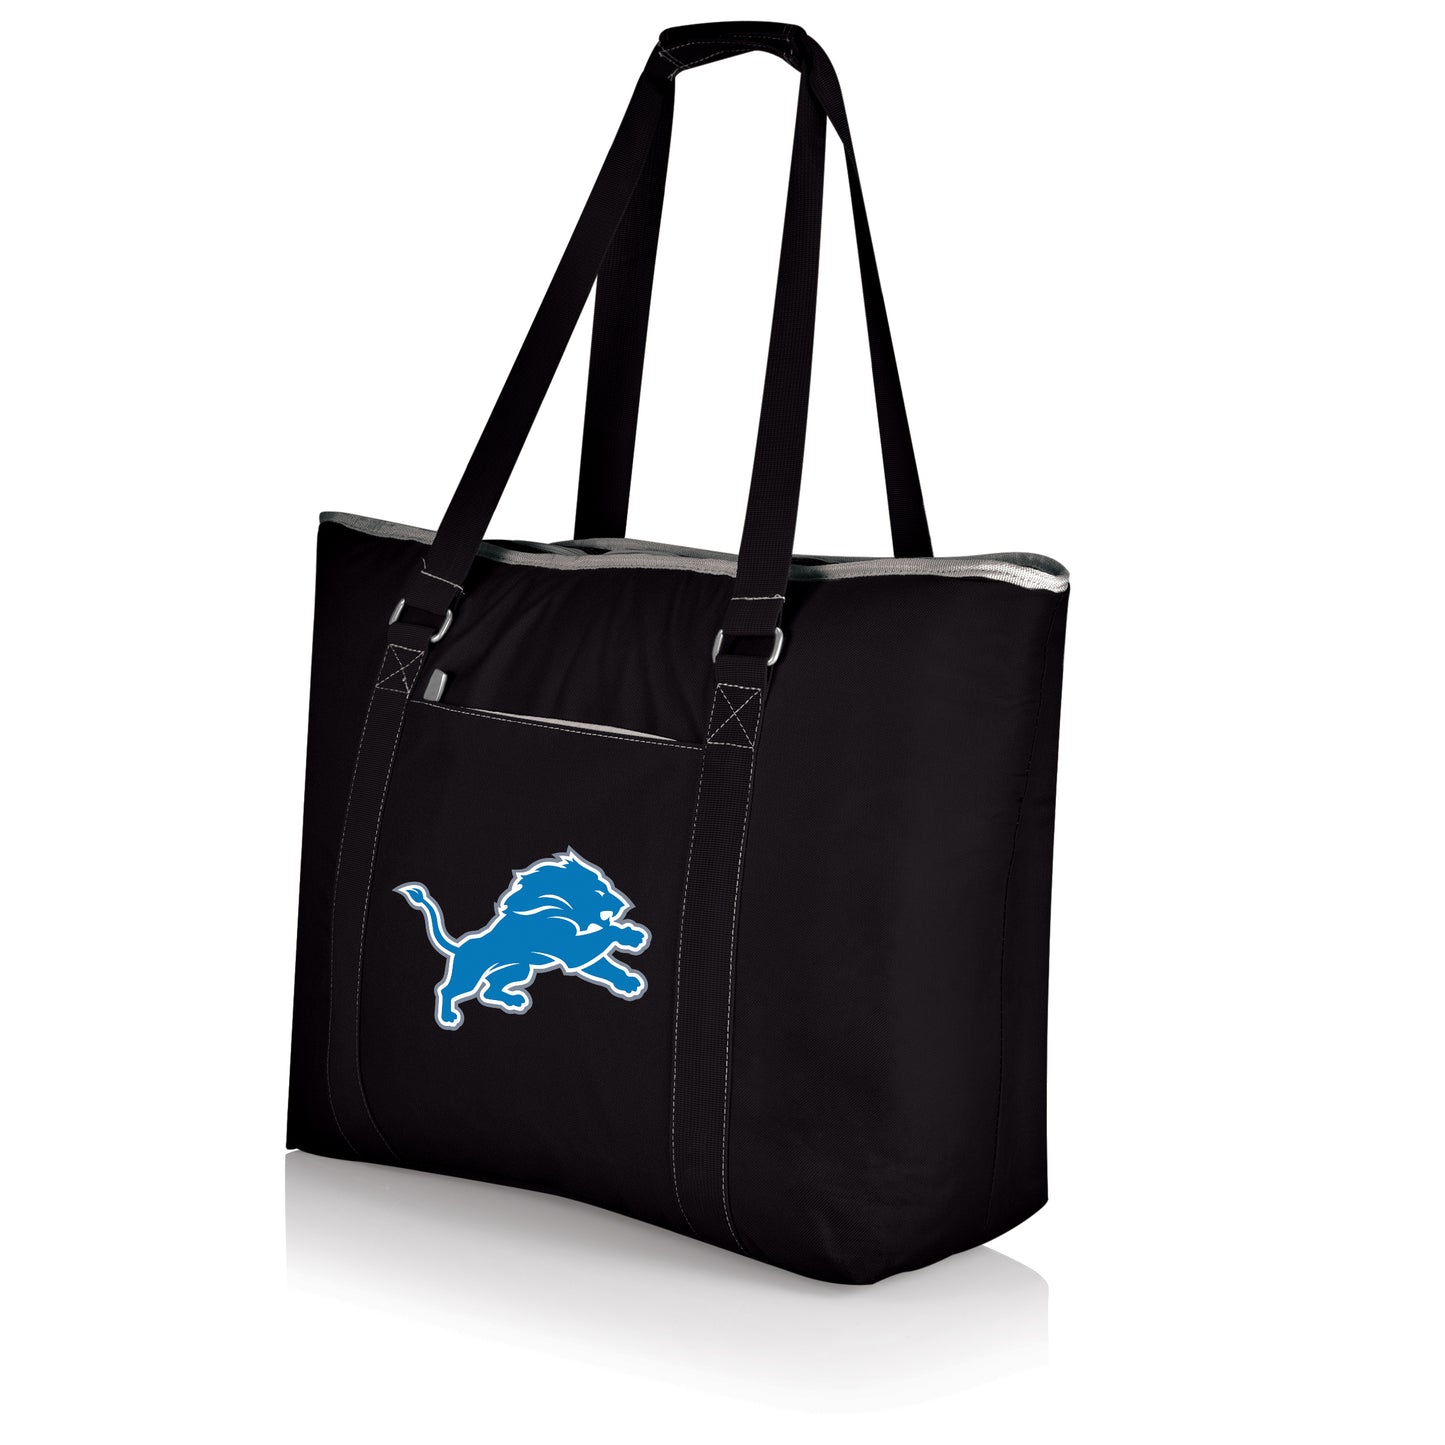 Detroit Lions - Tahoe XL Cooler Tote Bag